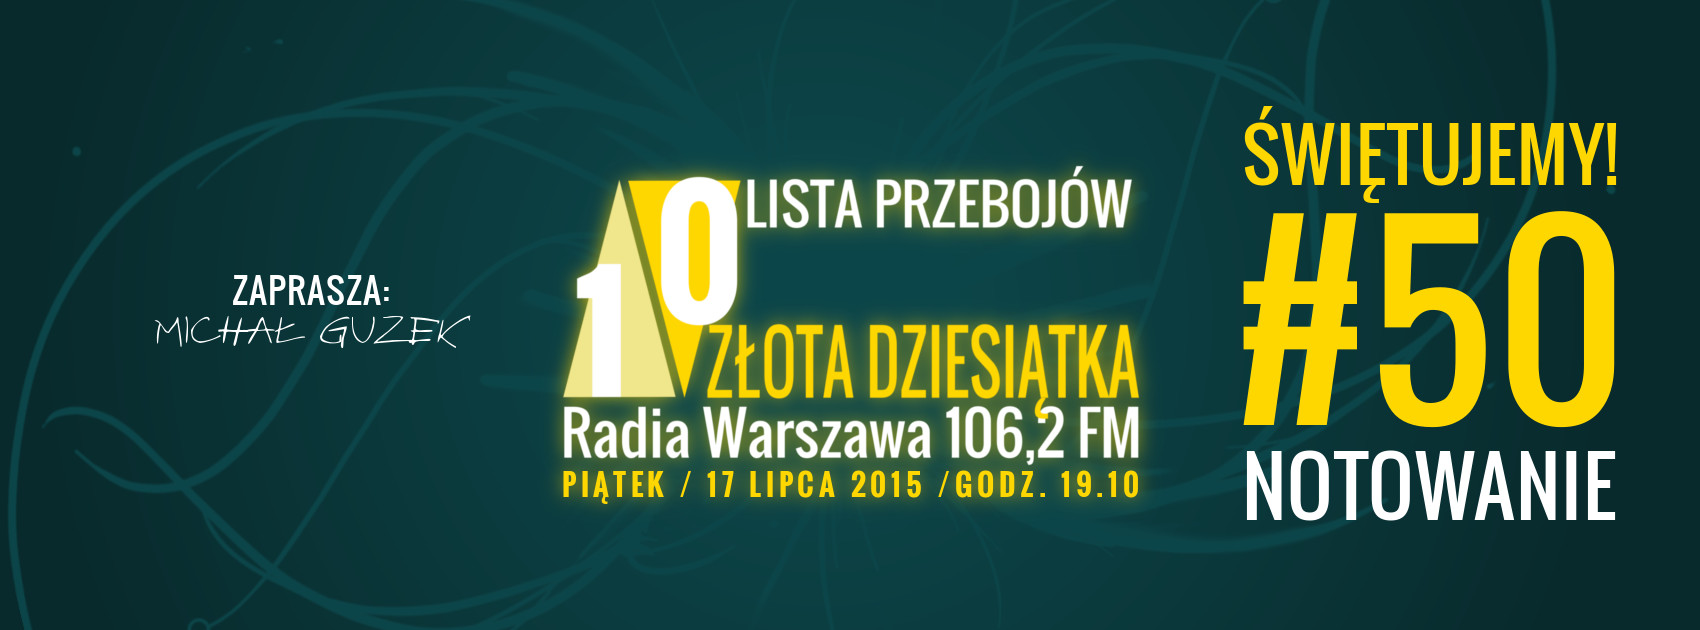 Złota 10 Dziesiątka Radia Warszawa - 50 notowanie